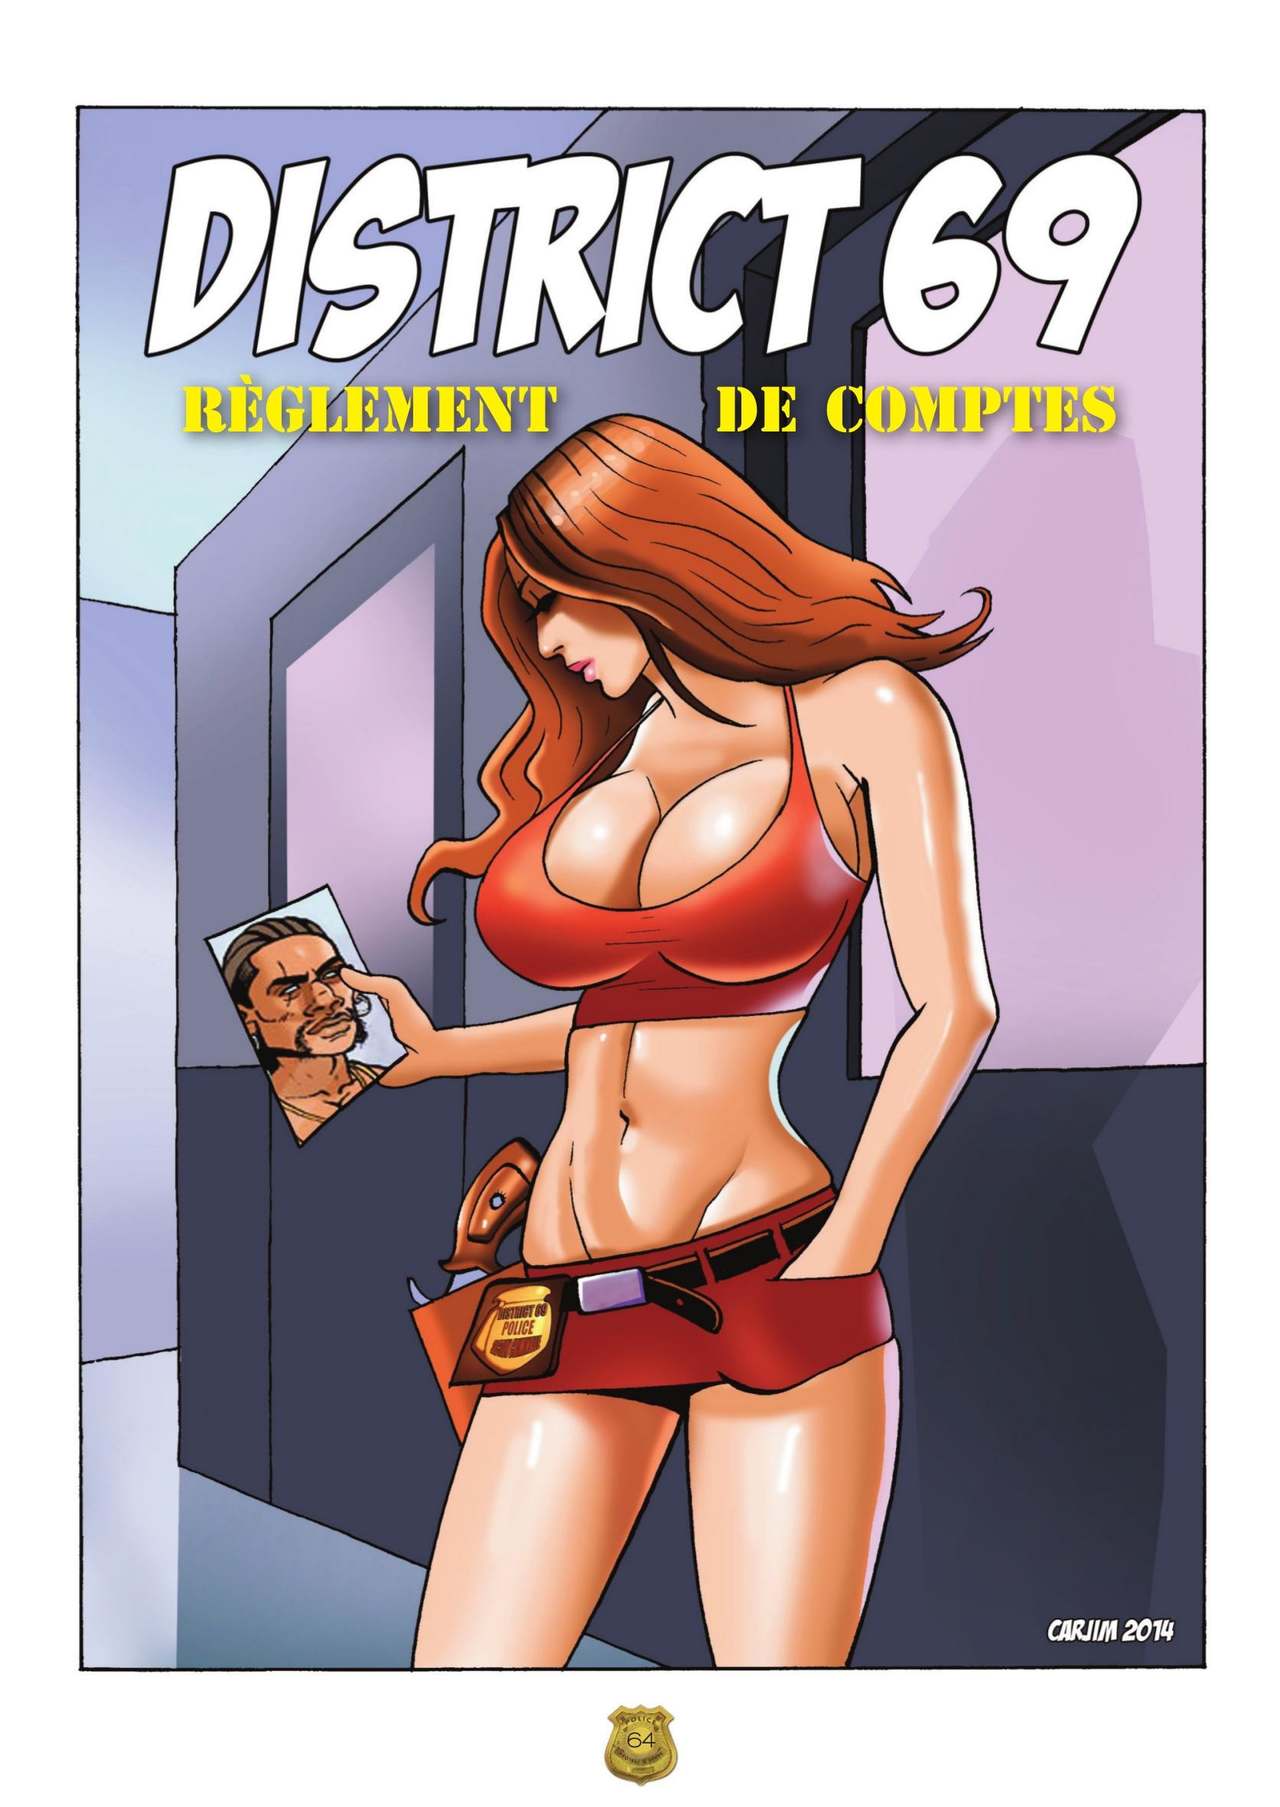 District 69 numero d'image 65